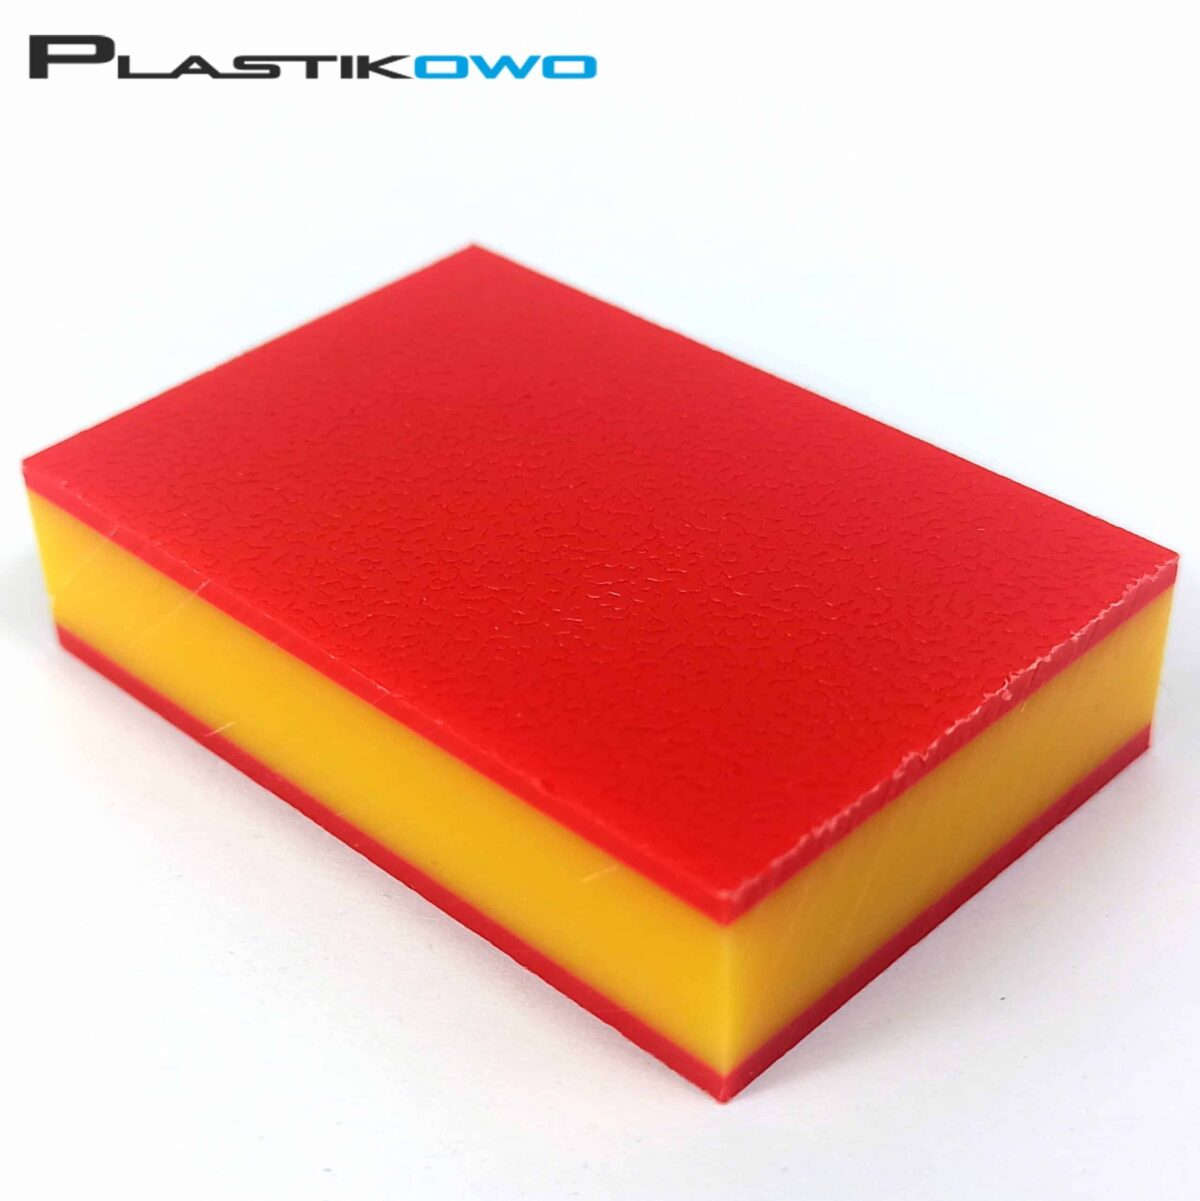 Płyty polietylenowe PE-HD 300 czerwony/żółty/czerwony